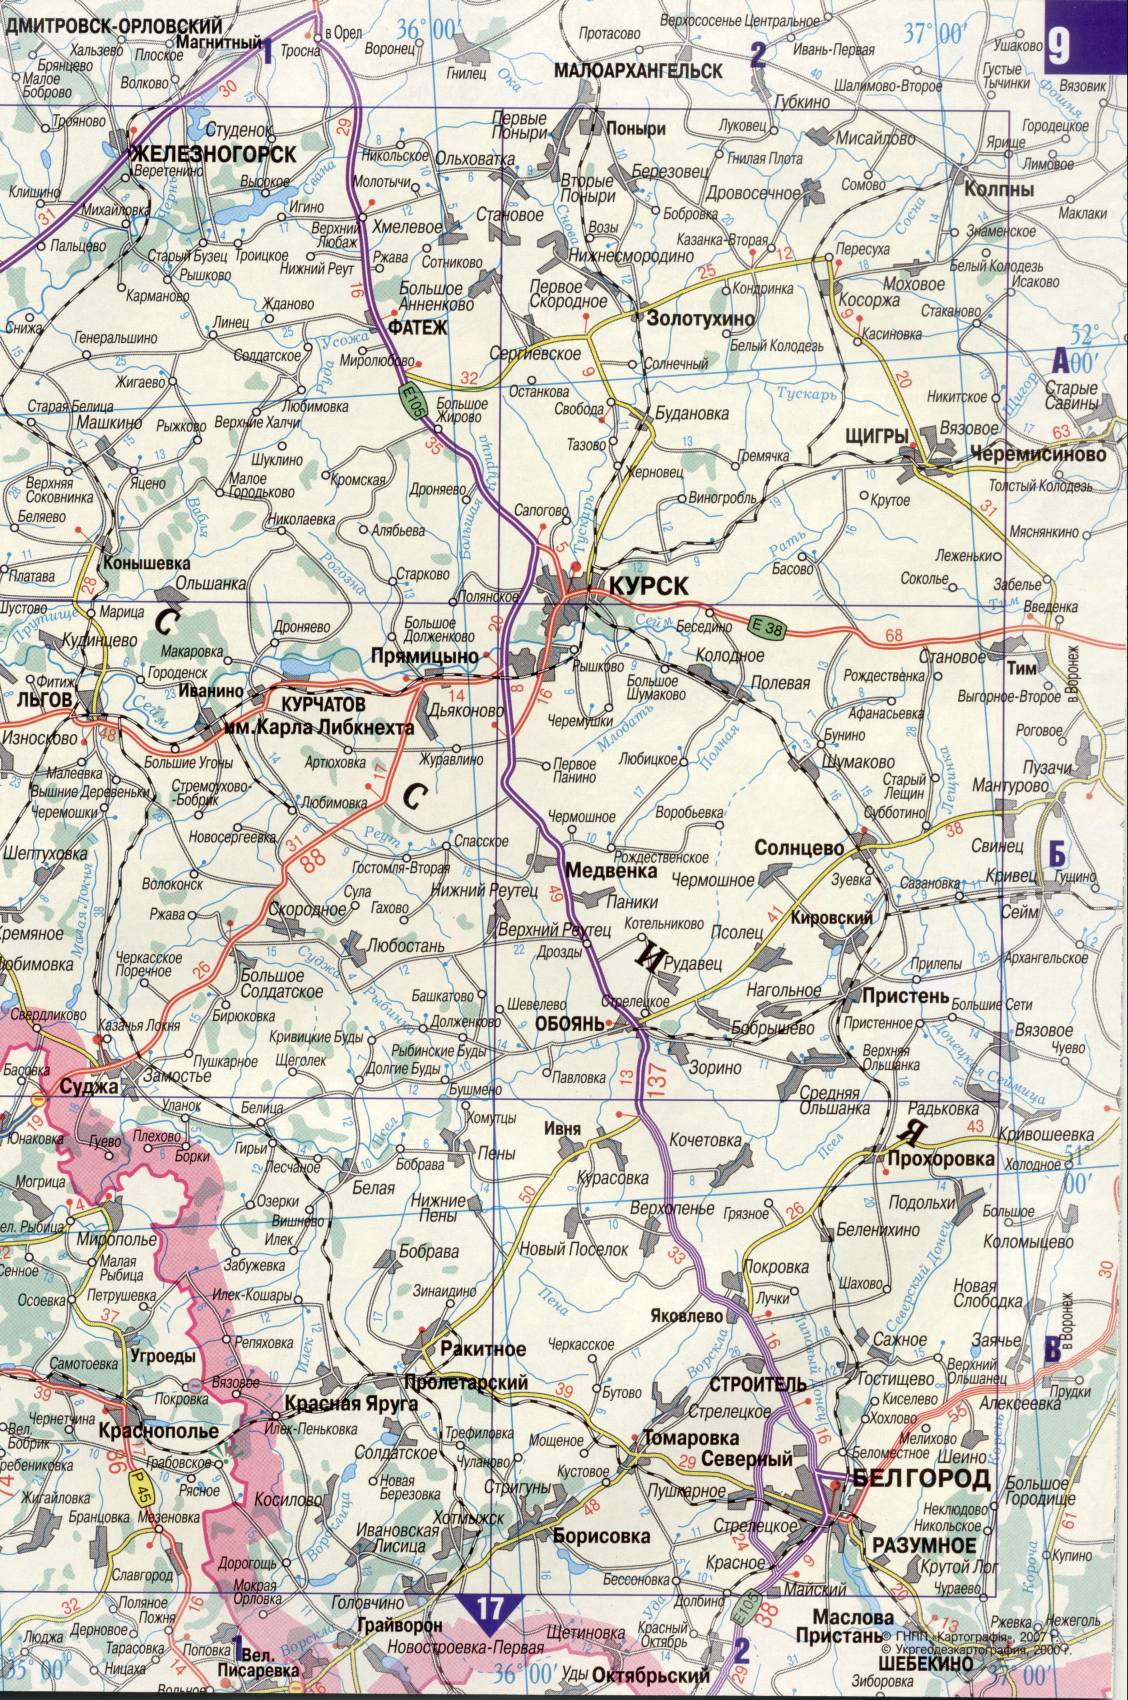 Karte der Ukraine. Detaillierte Straßenkarte der Ukraine avtomobilnog Satin. kostenlos herunterladen, H0